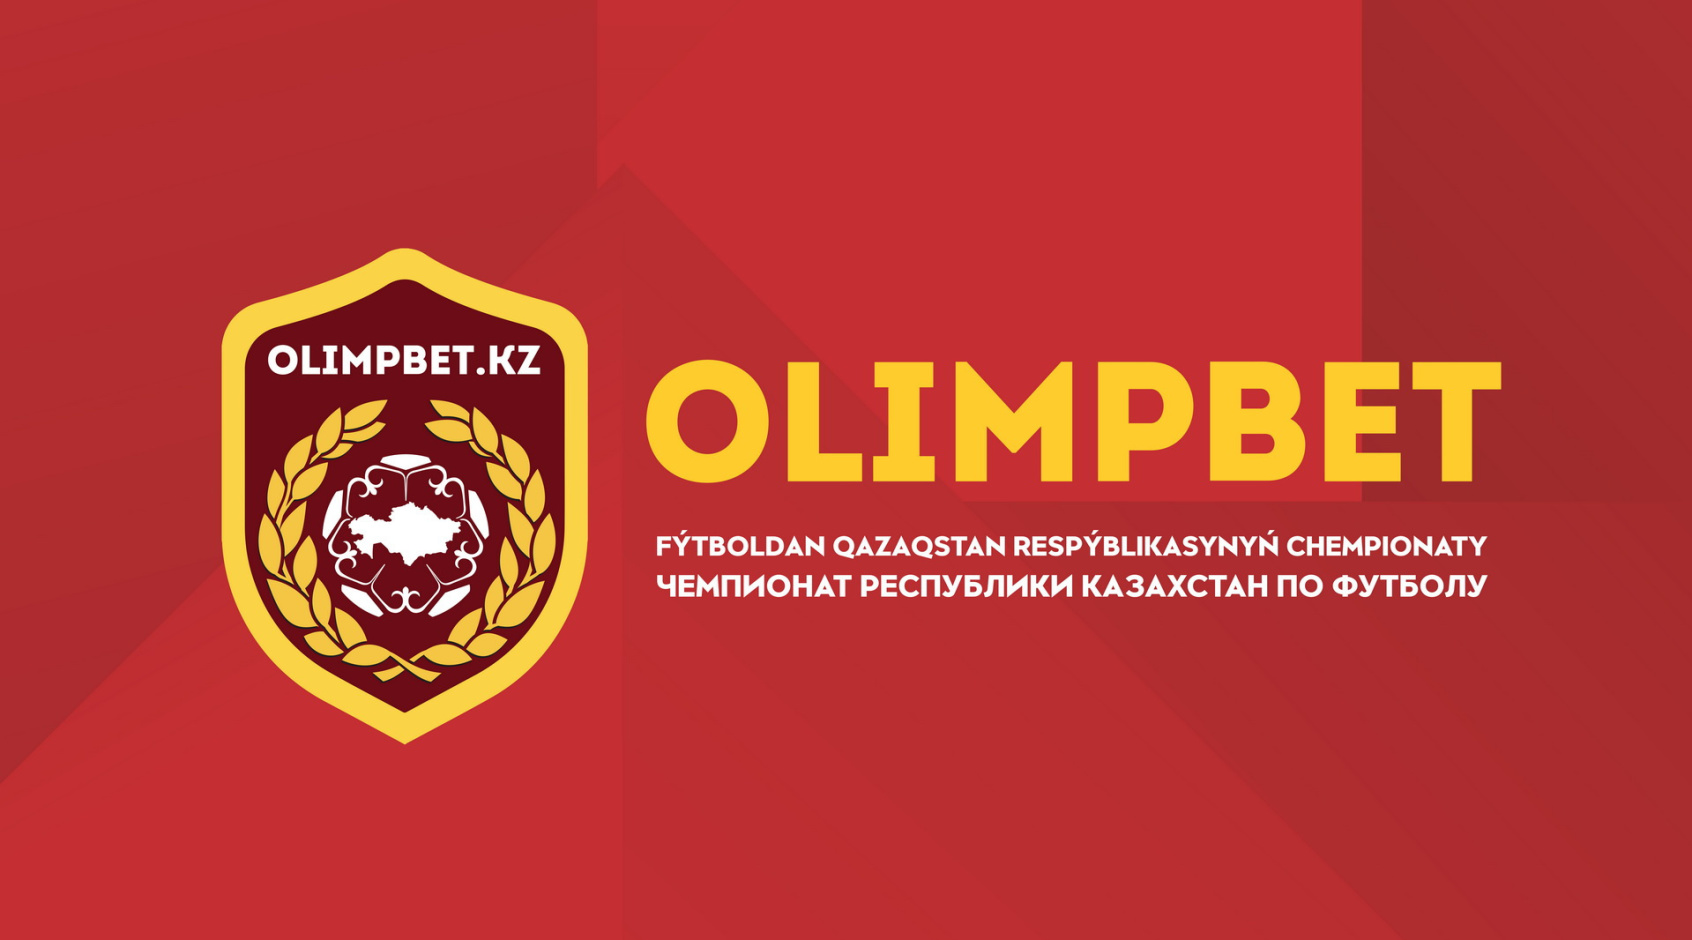 Официально: чемпионат Казахстана приостановлен на 14 дней из-за коронавируса